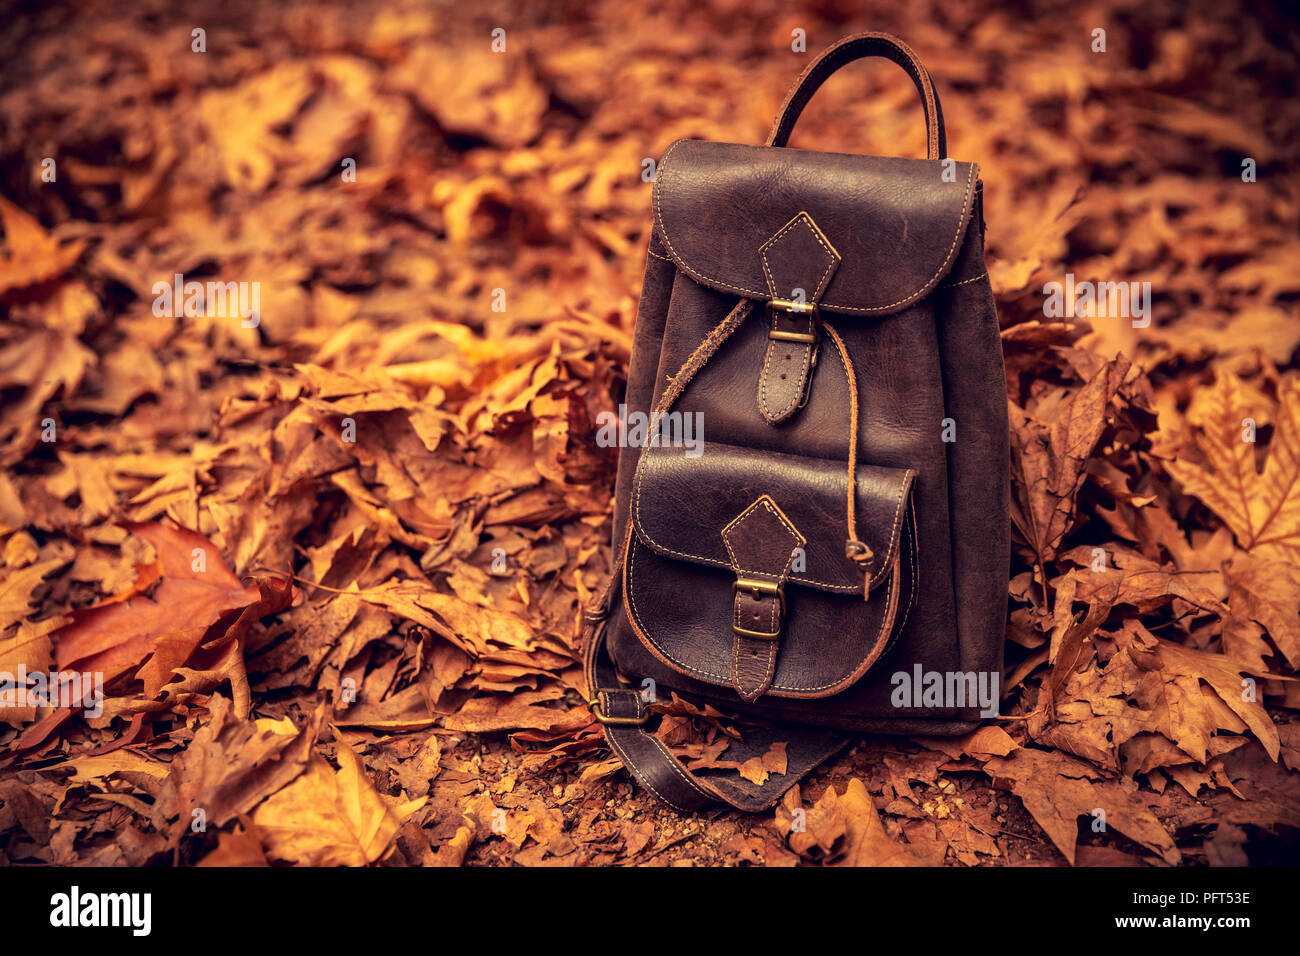 Elegantes Leder braun Rucksack auf den Boden mit alten trockenen Baum Blätter in den Park bedeckt, aktiven Tourismus im Herbst Jahreszeit, zurück in die Schule Konzept Stockfoto